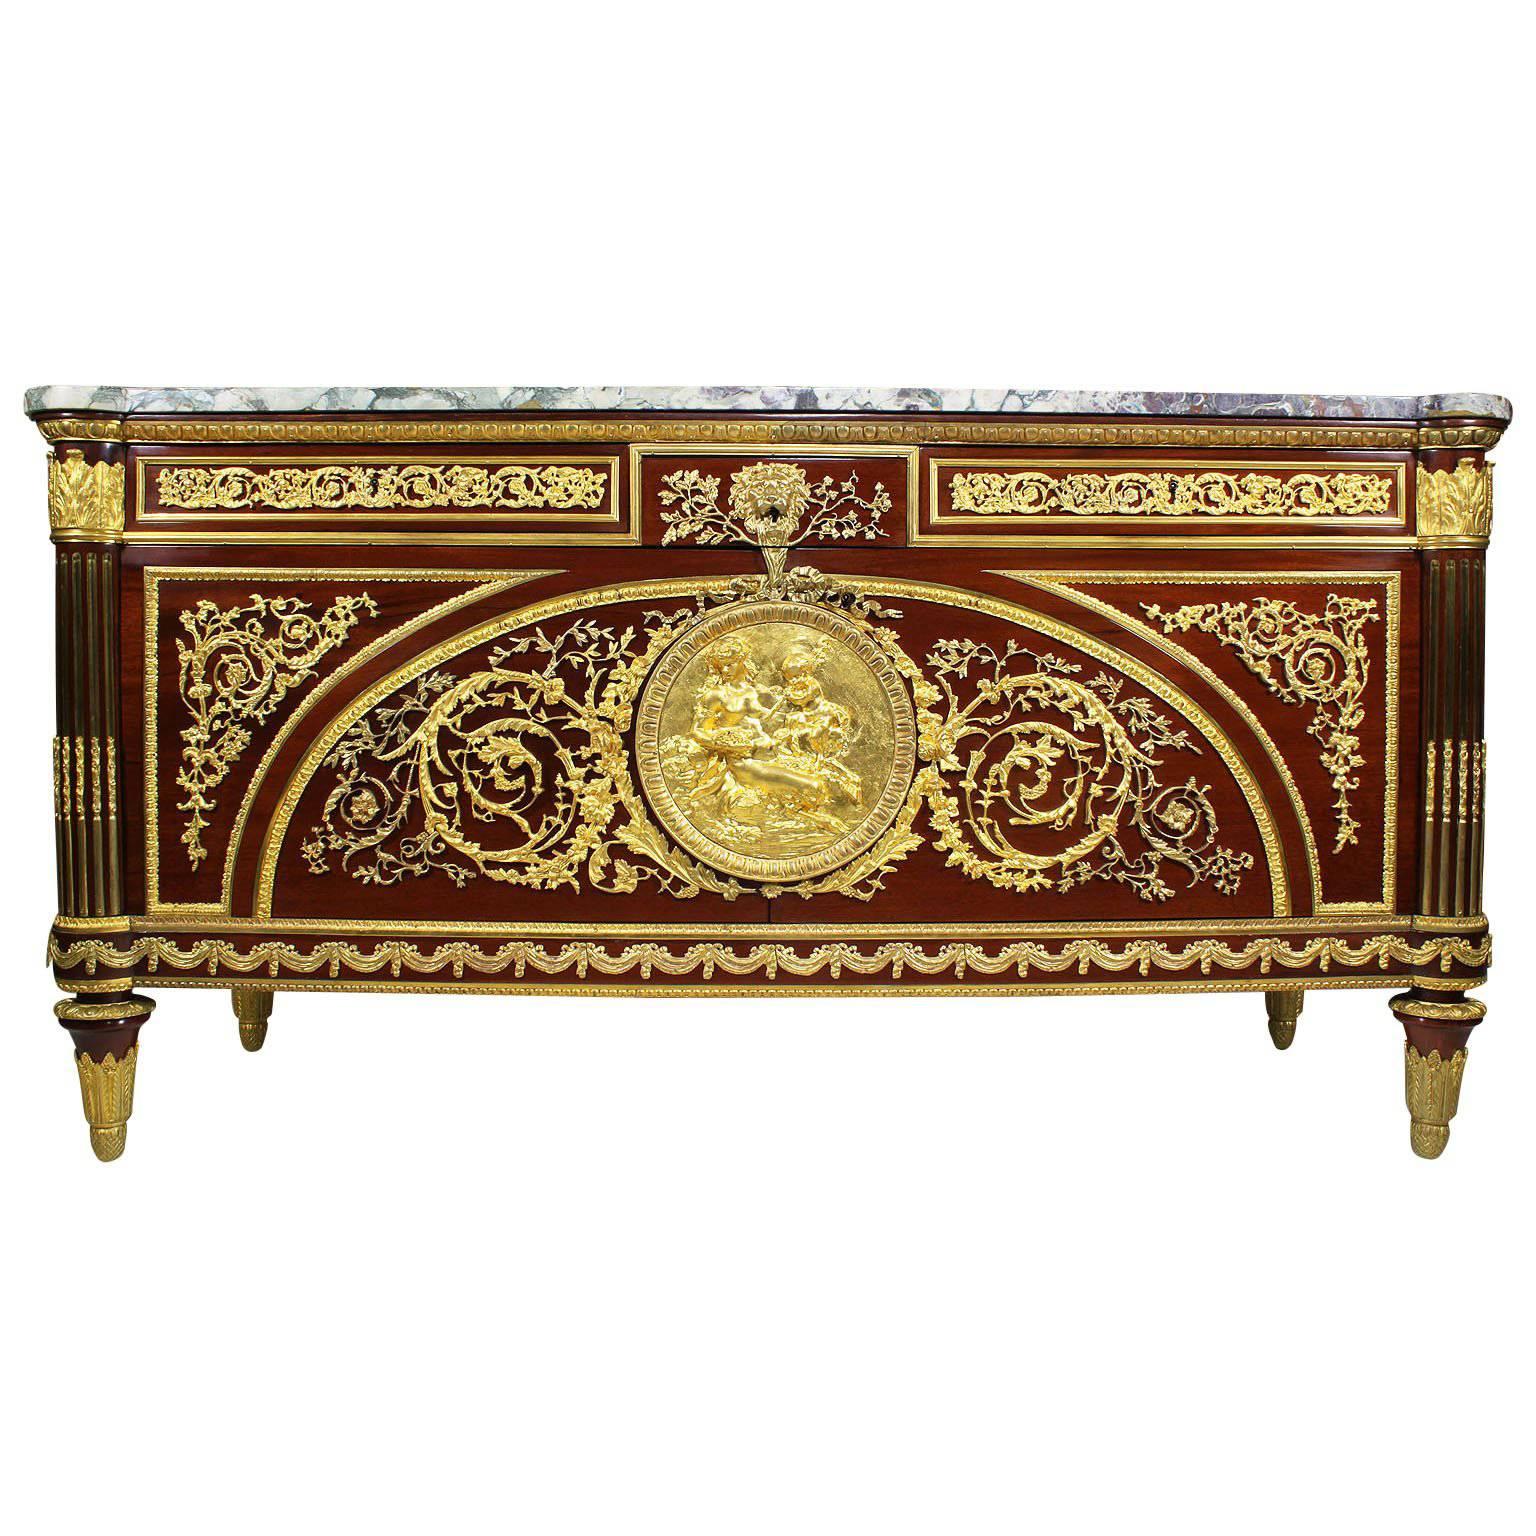 Commode française de style Louis XVI du 19e-20e siècle en acajou et ornementation de bronze doré